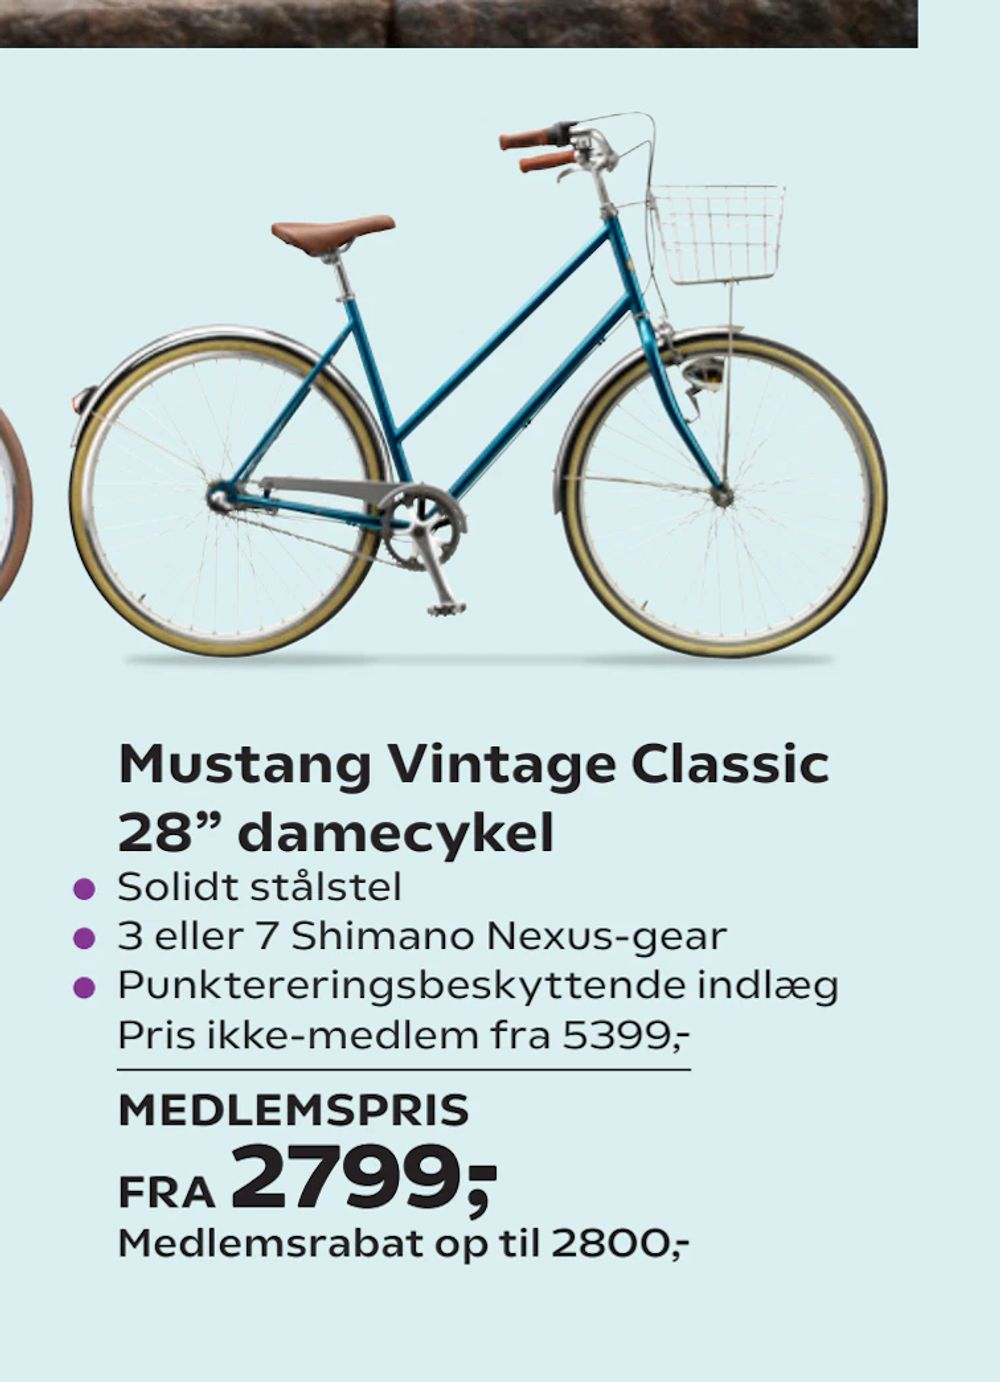 Tilbud på Mustang Vintage Classic 28” damecykel fra Coop.dk til 2.799 kr.